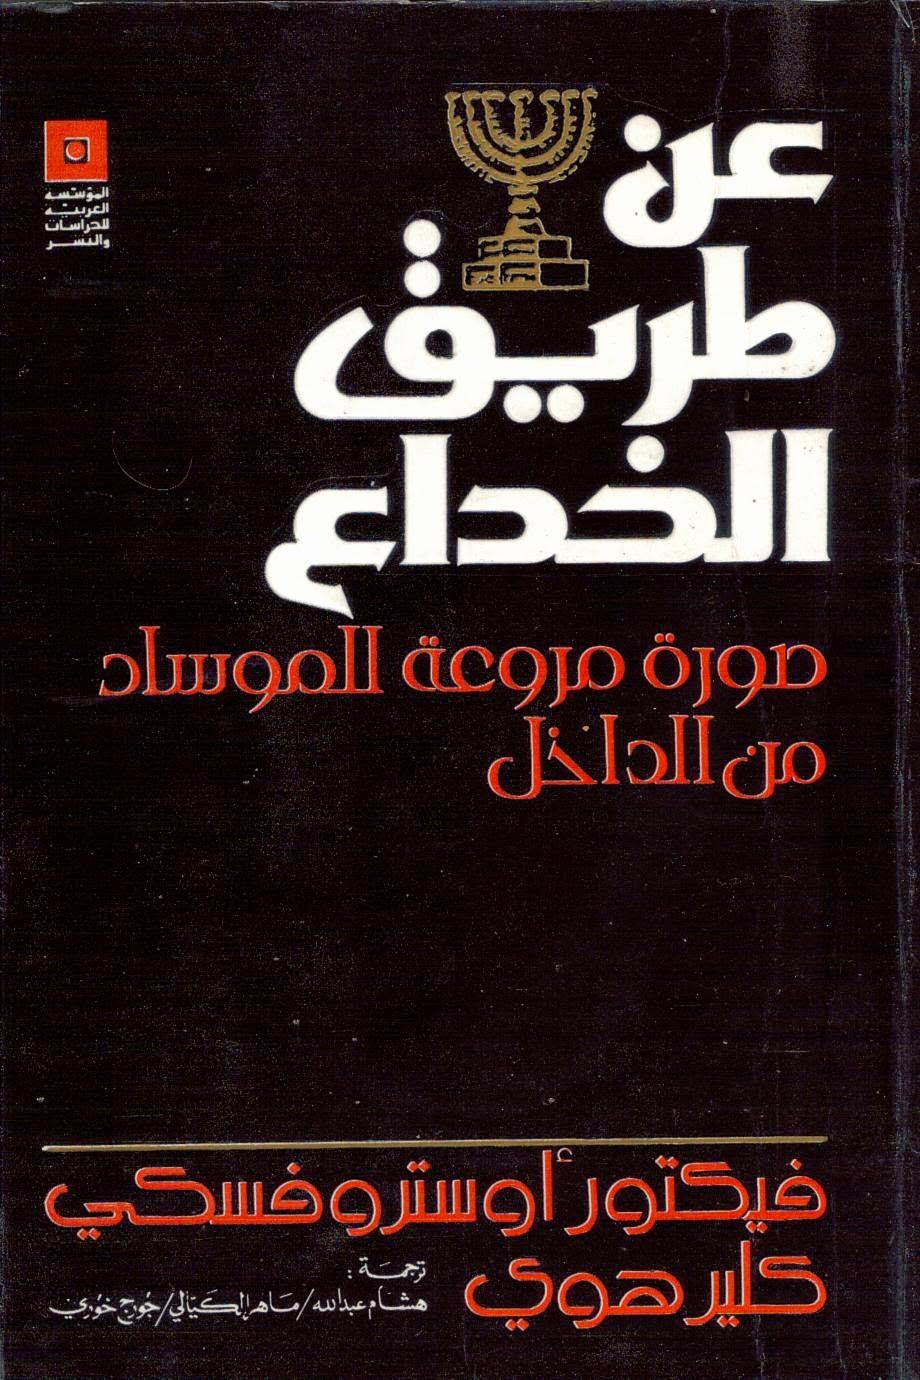 غلاف الكتاب بترجمته العربية